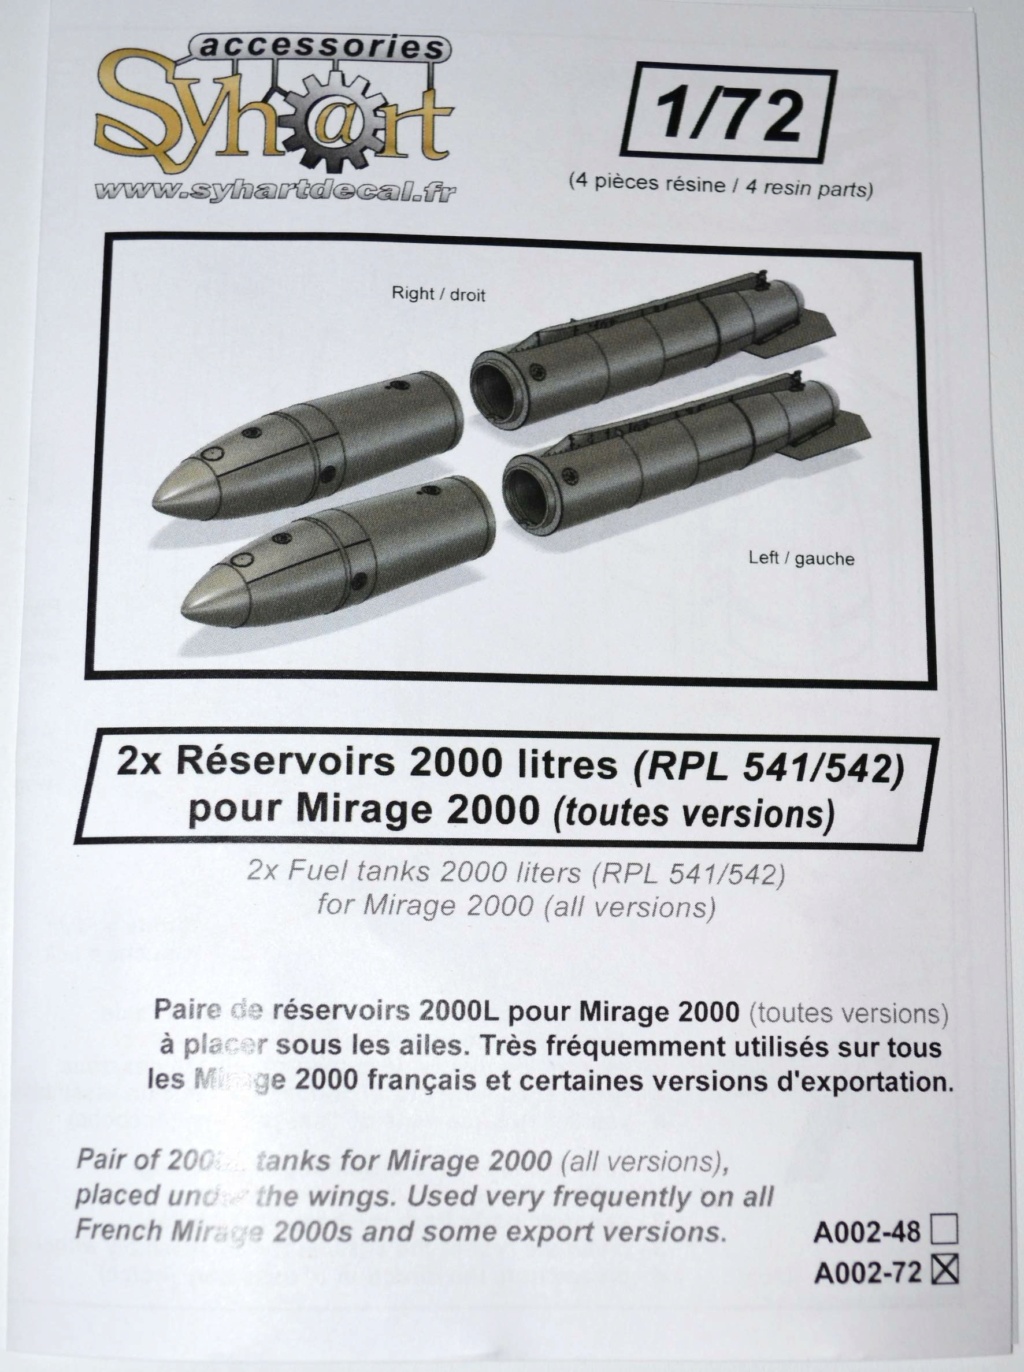 Syhart accessories A002 2x réservoirs 2000L pour Mirage 2000 Dsc_1136